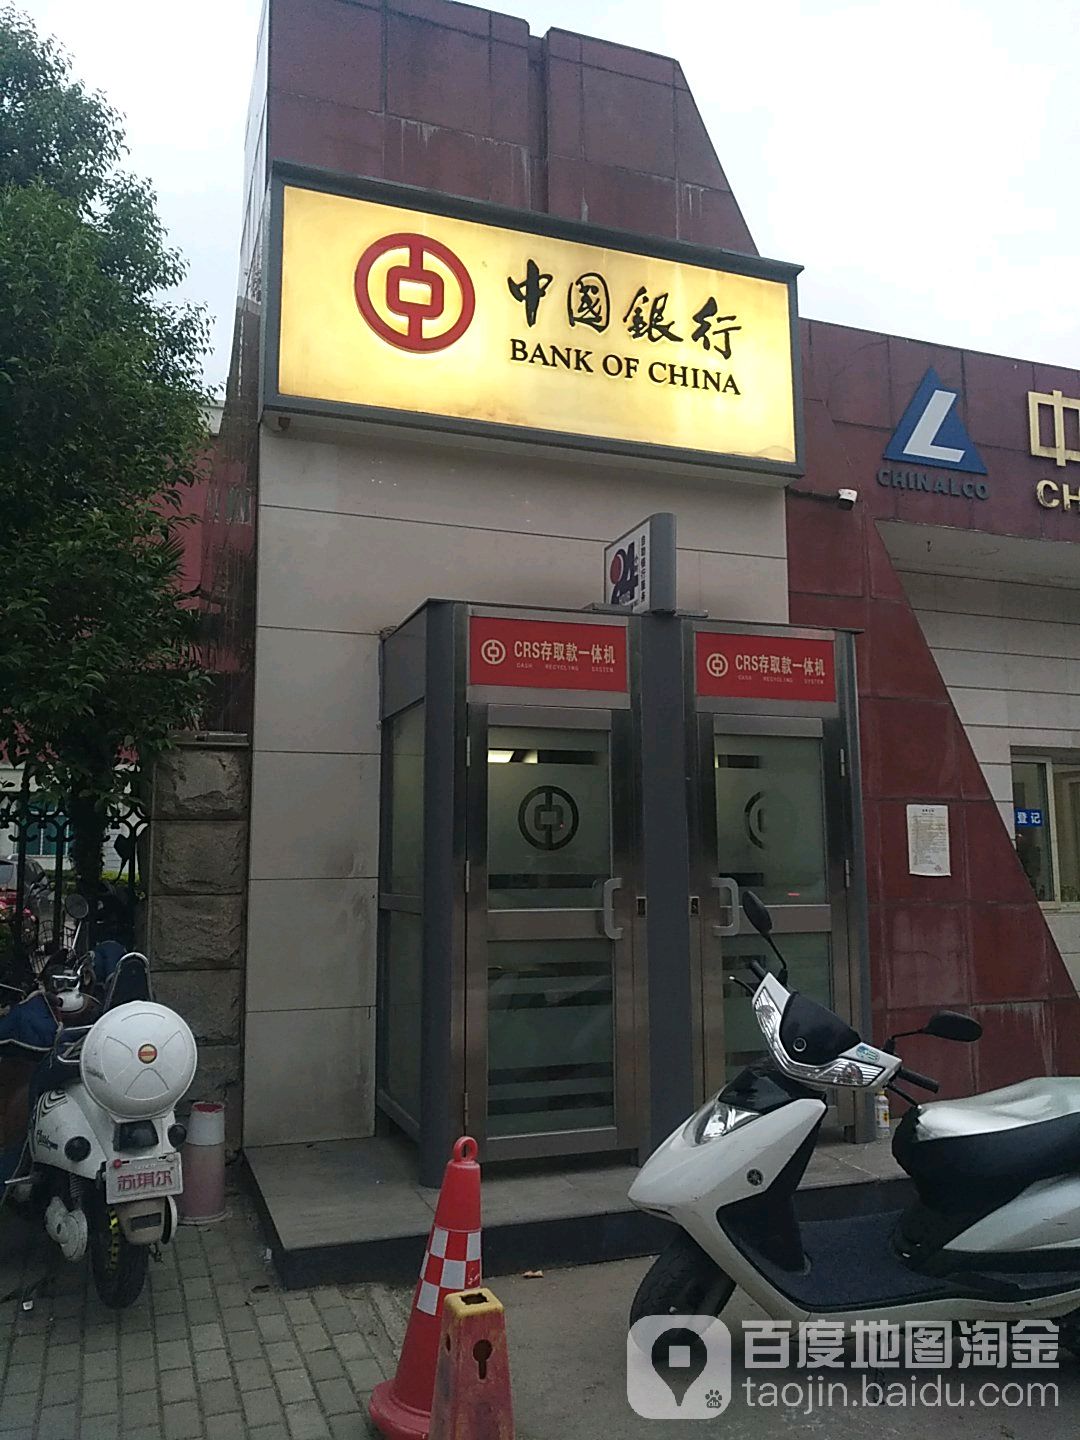 中國銀行24小時自助銀行(建設路店)